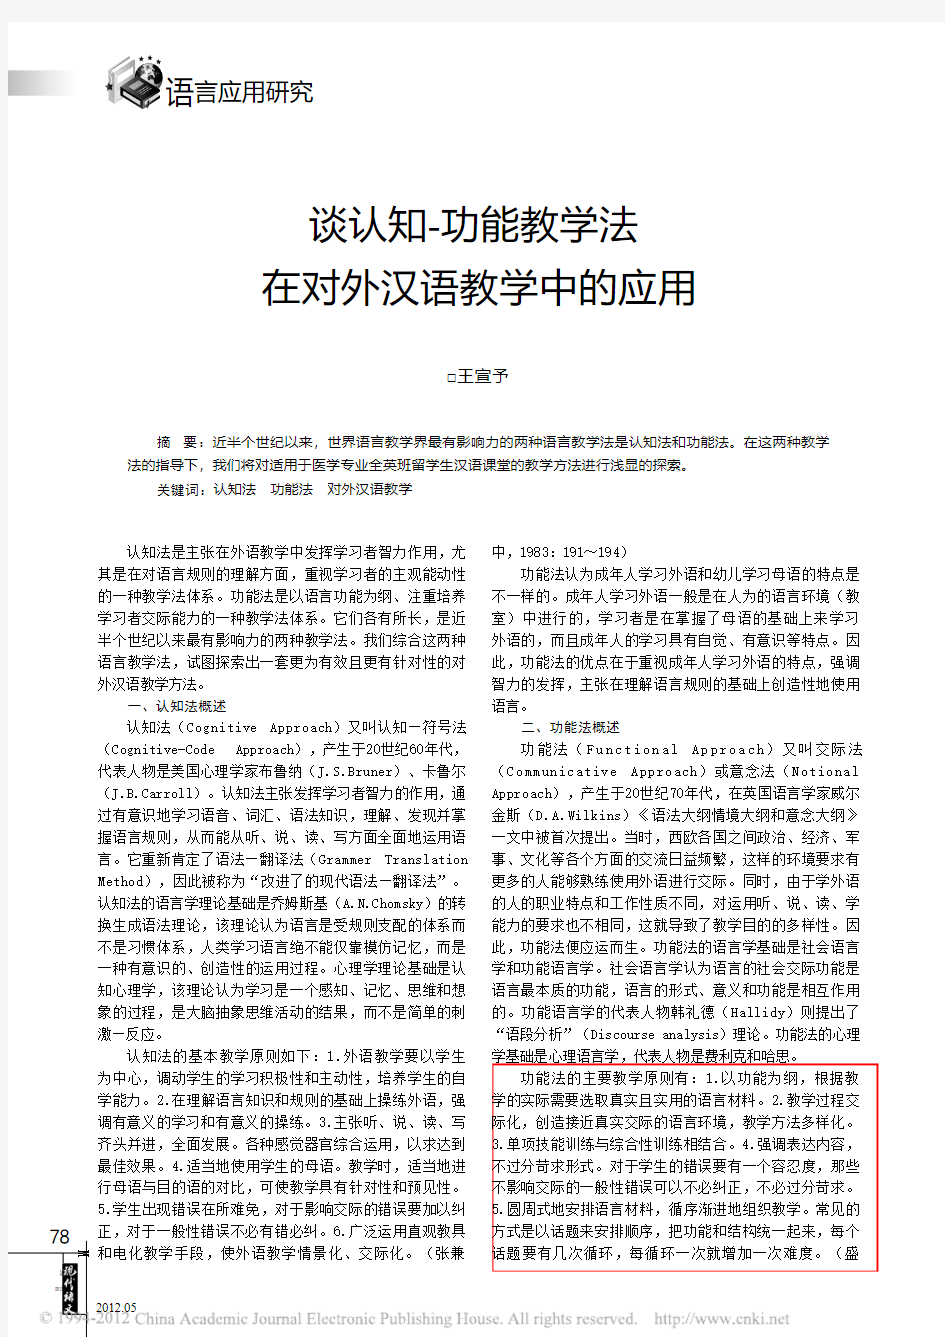 谈认知_功能教学法在对外汉语教学中的应用_王宣予